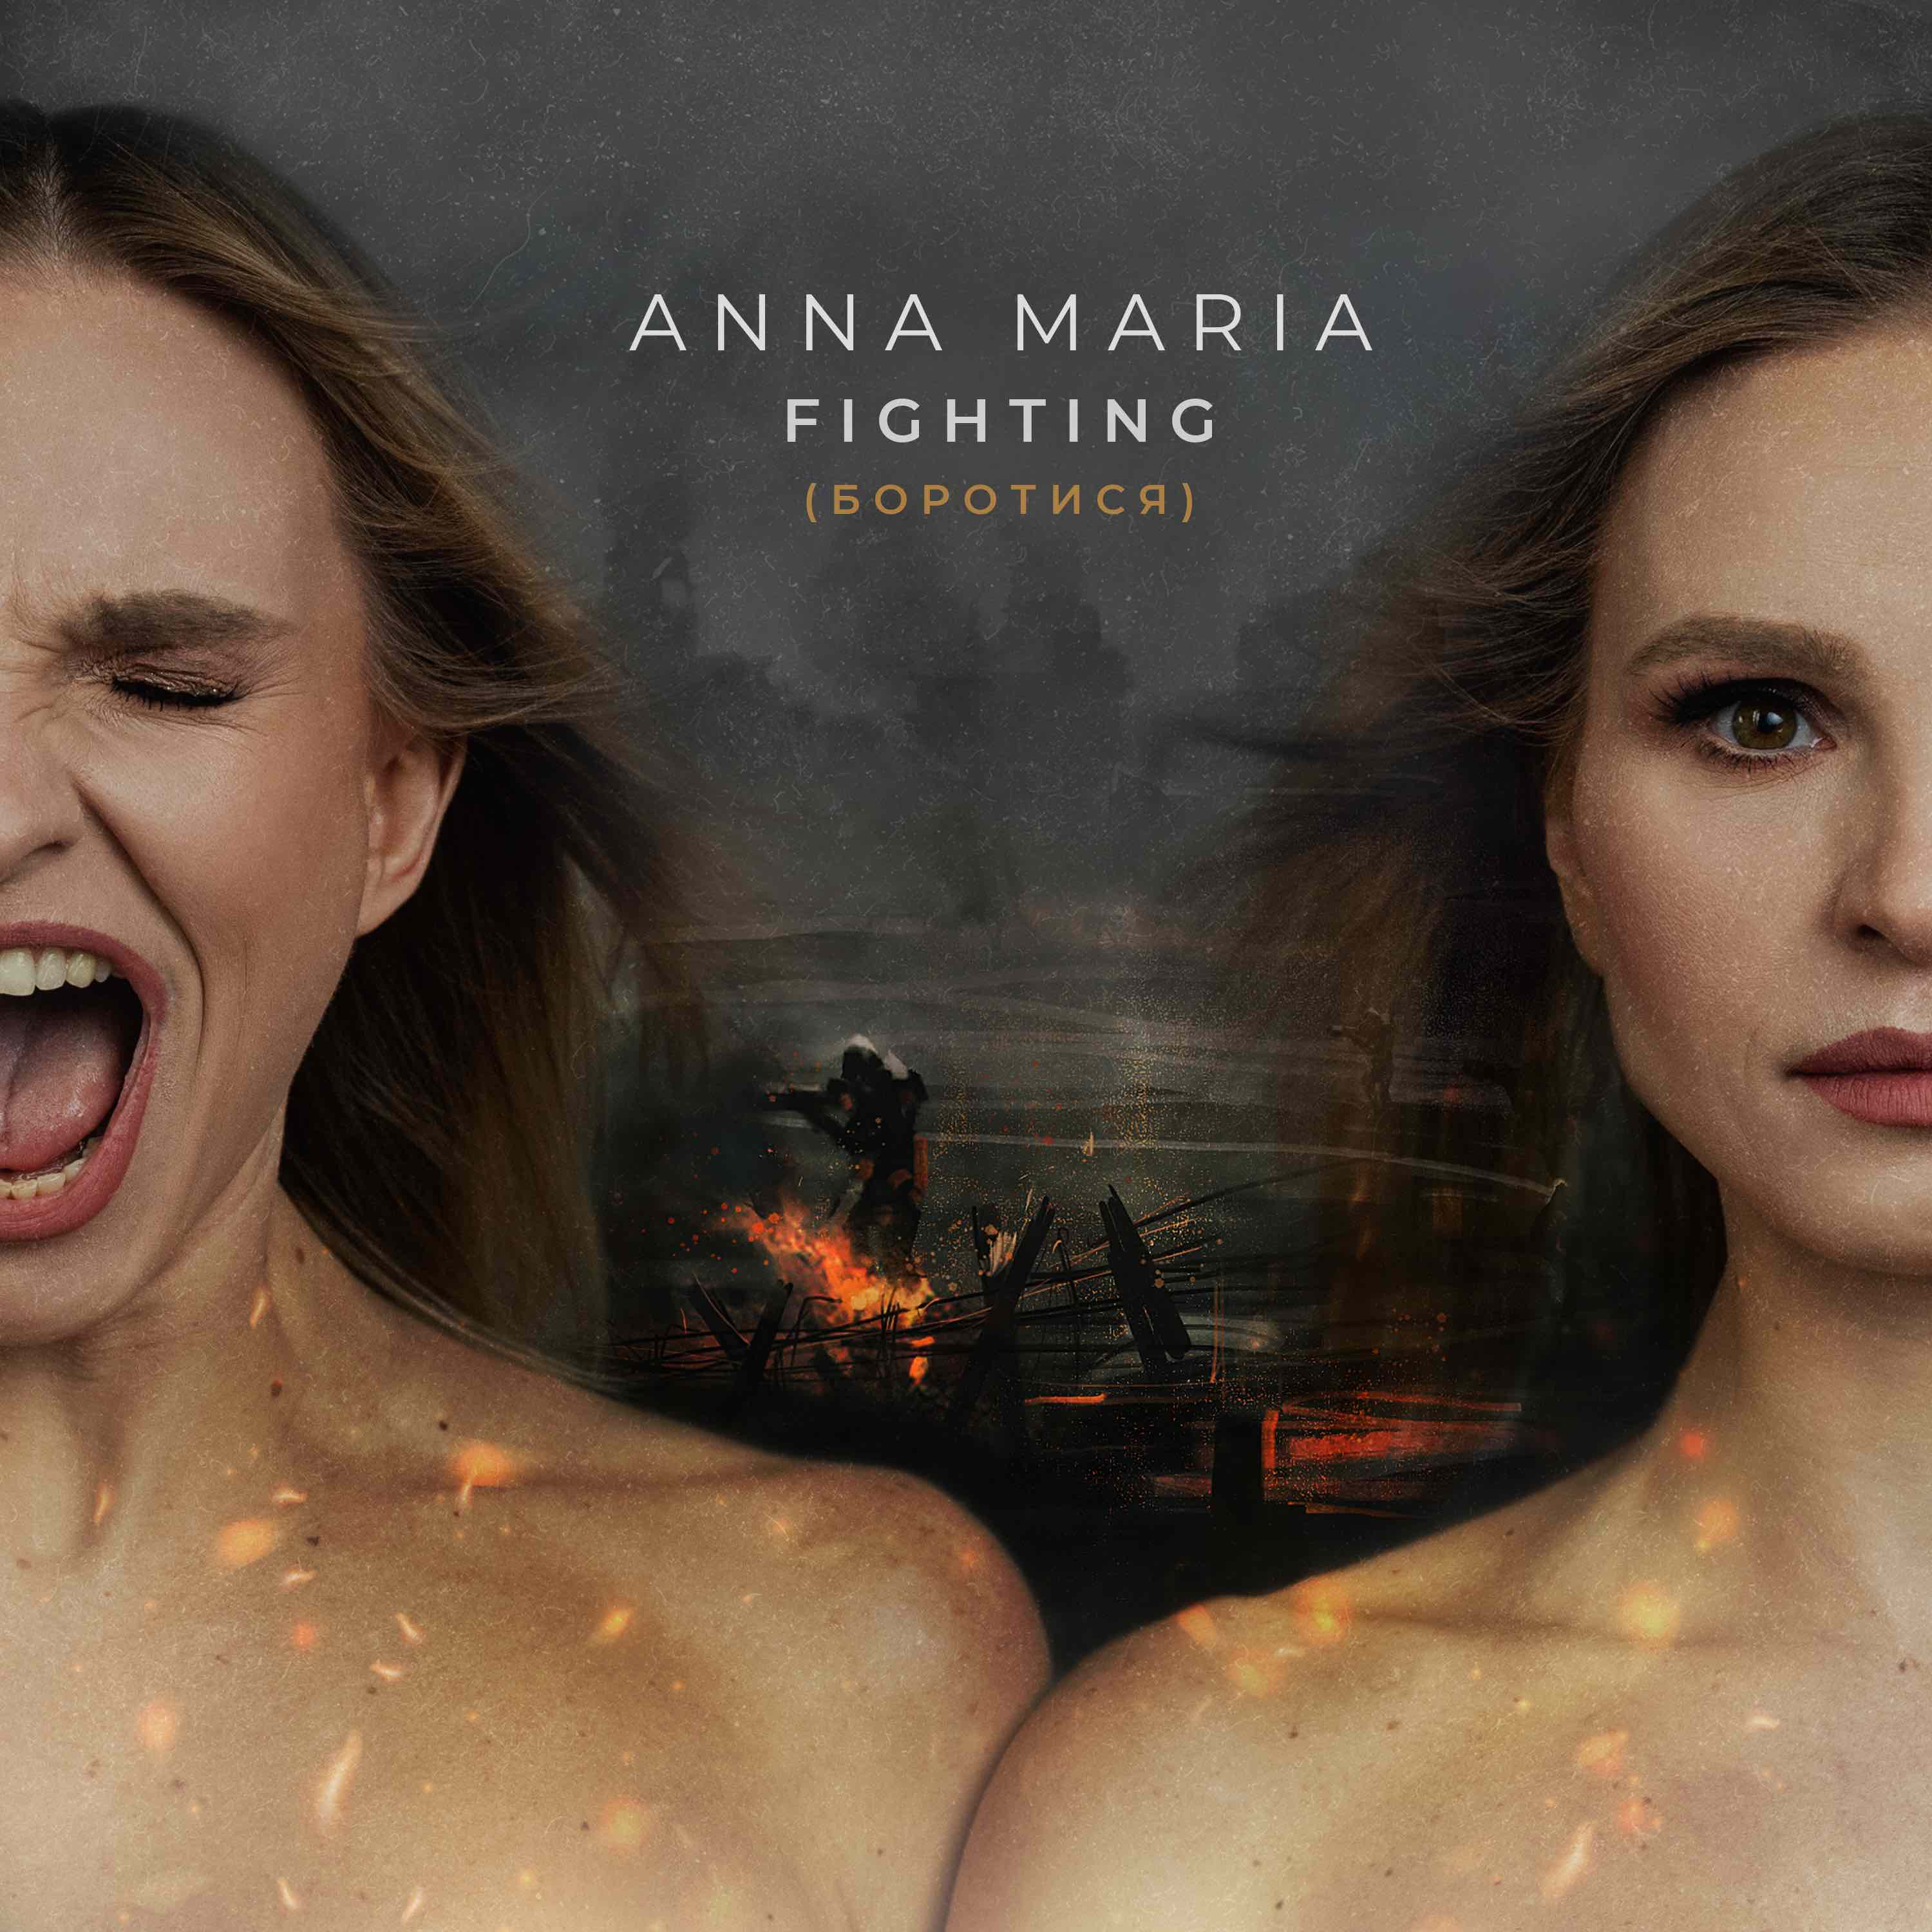 Боротися до Перемоги: ANNA MARIA представили емоційну пісню та кліп, в якому знявся коханий учасниці дуету - військовий ЗСУ